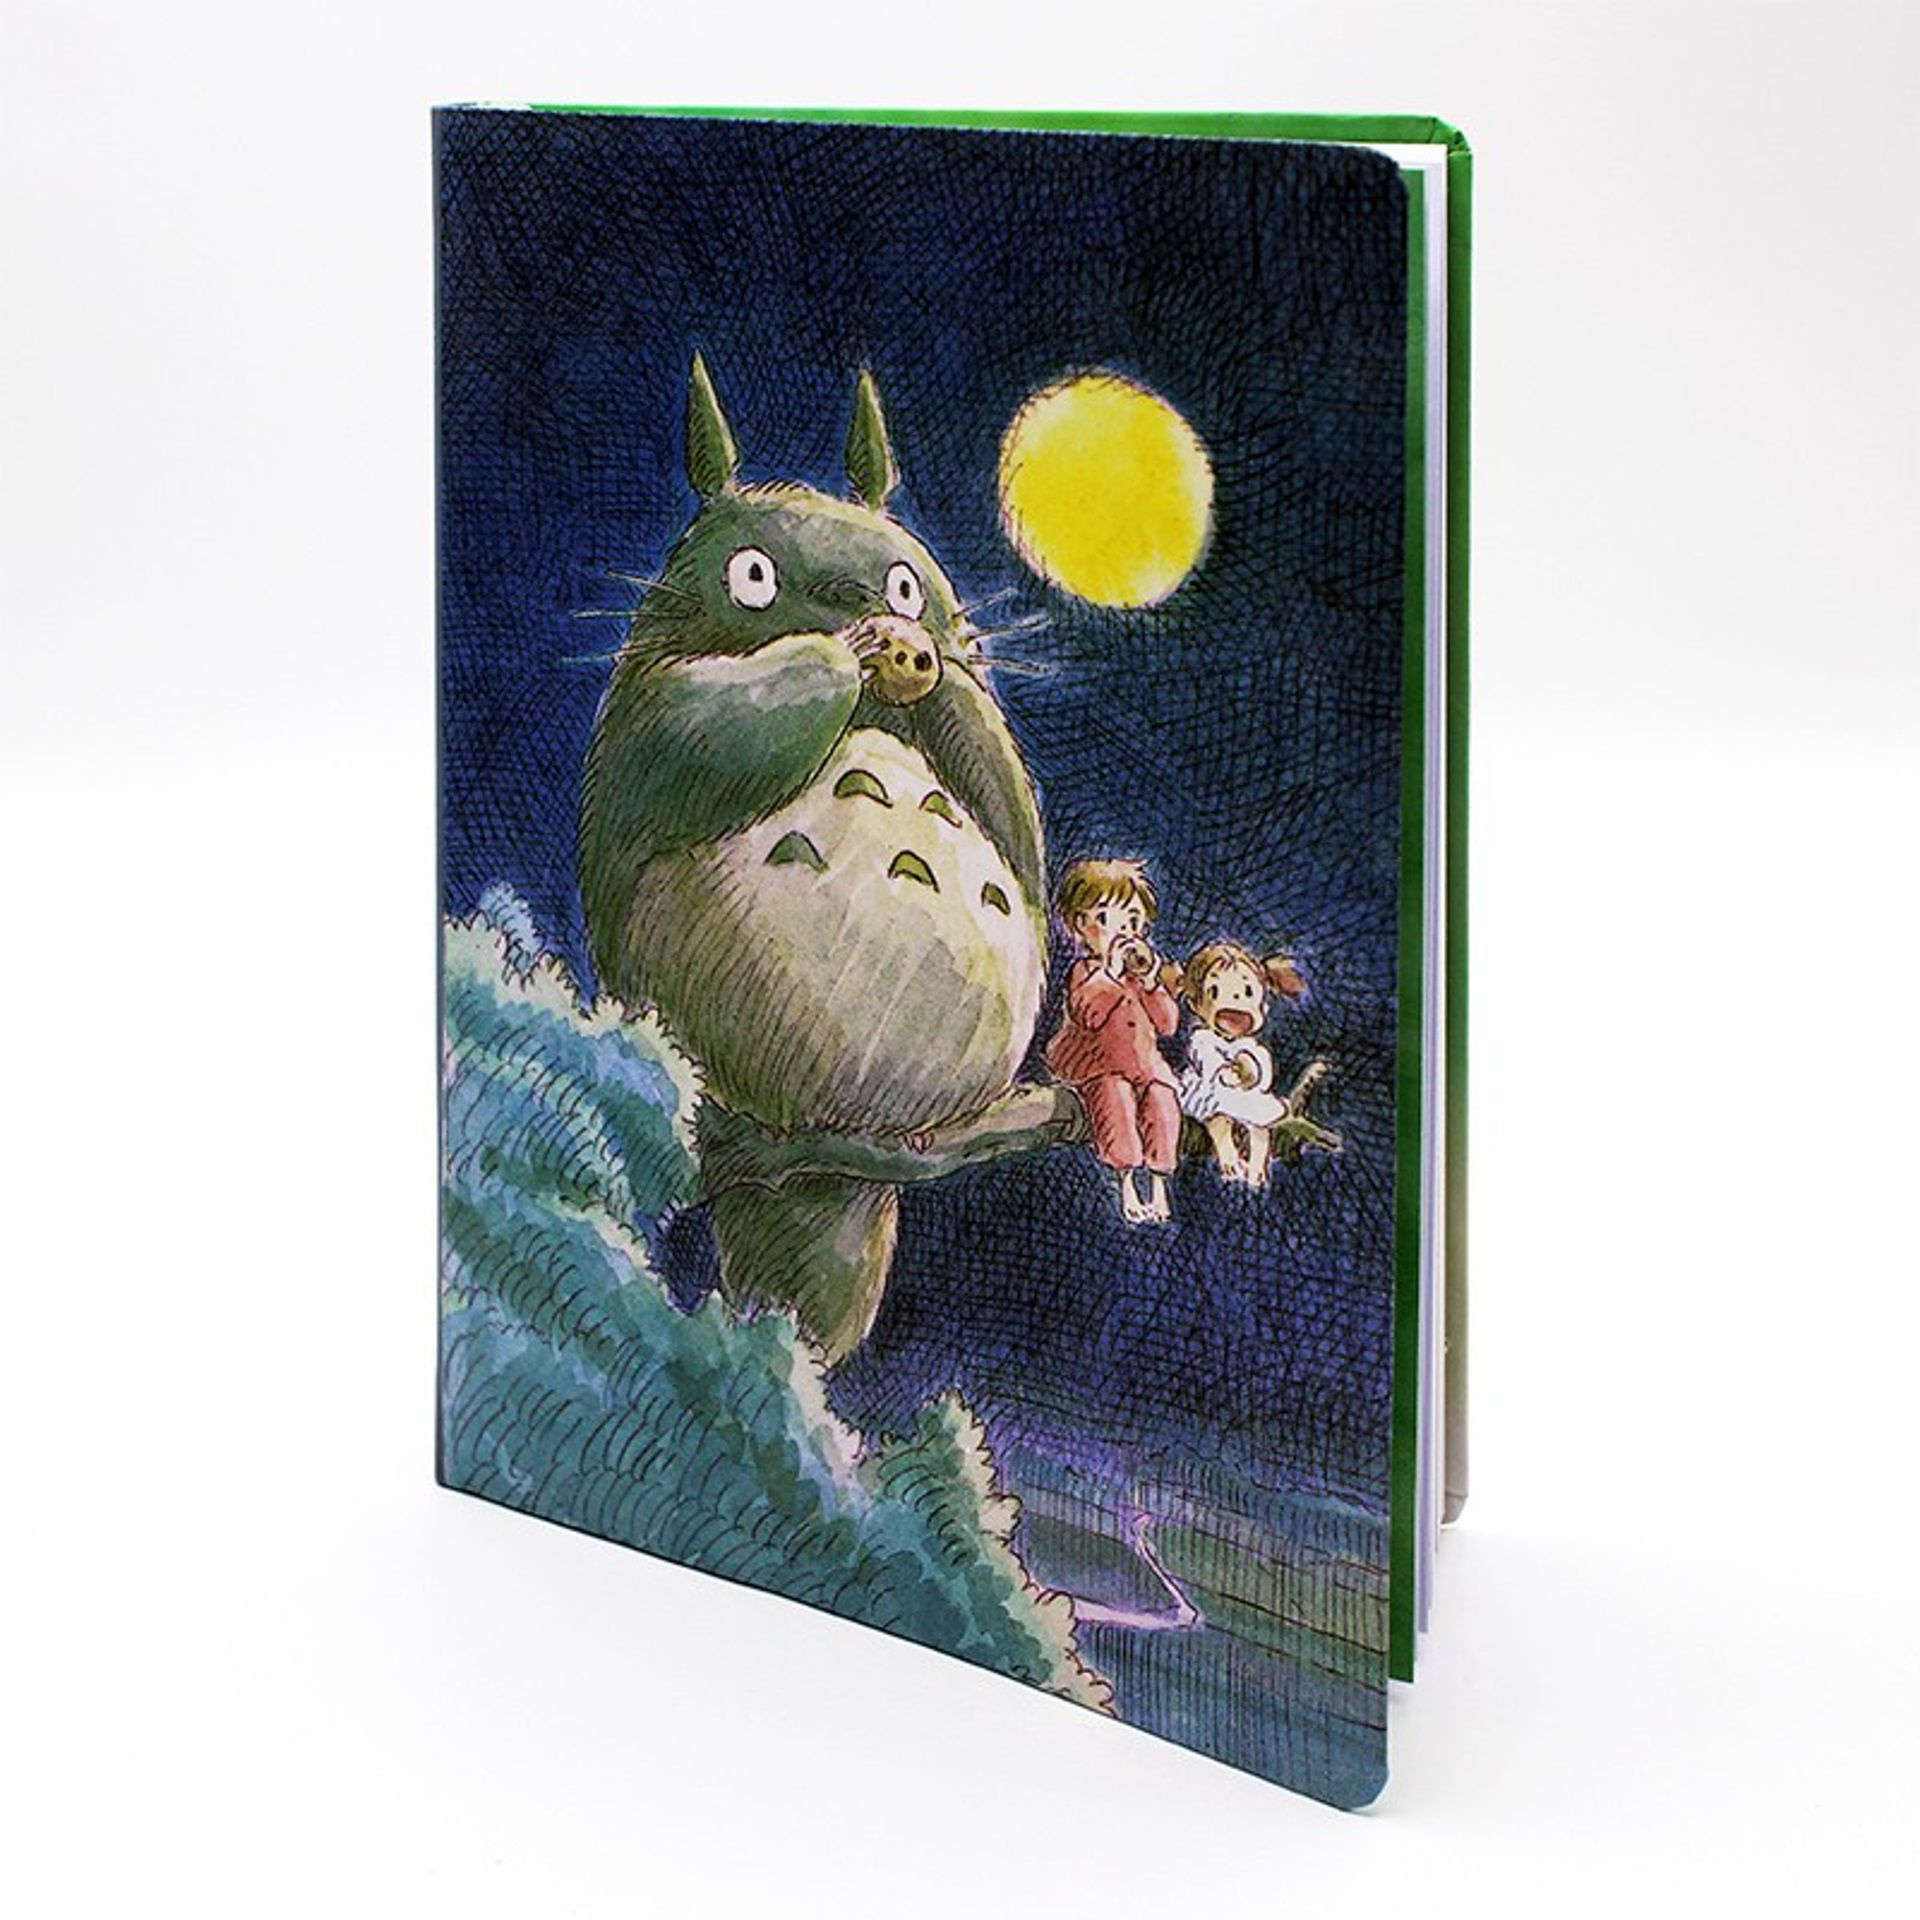 Acheter Ghibli - Mon voisin Totoro - Carnet de notes à couverture Totoro -  Papeterie prix promo neuf et occasion pas cher